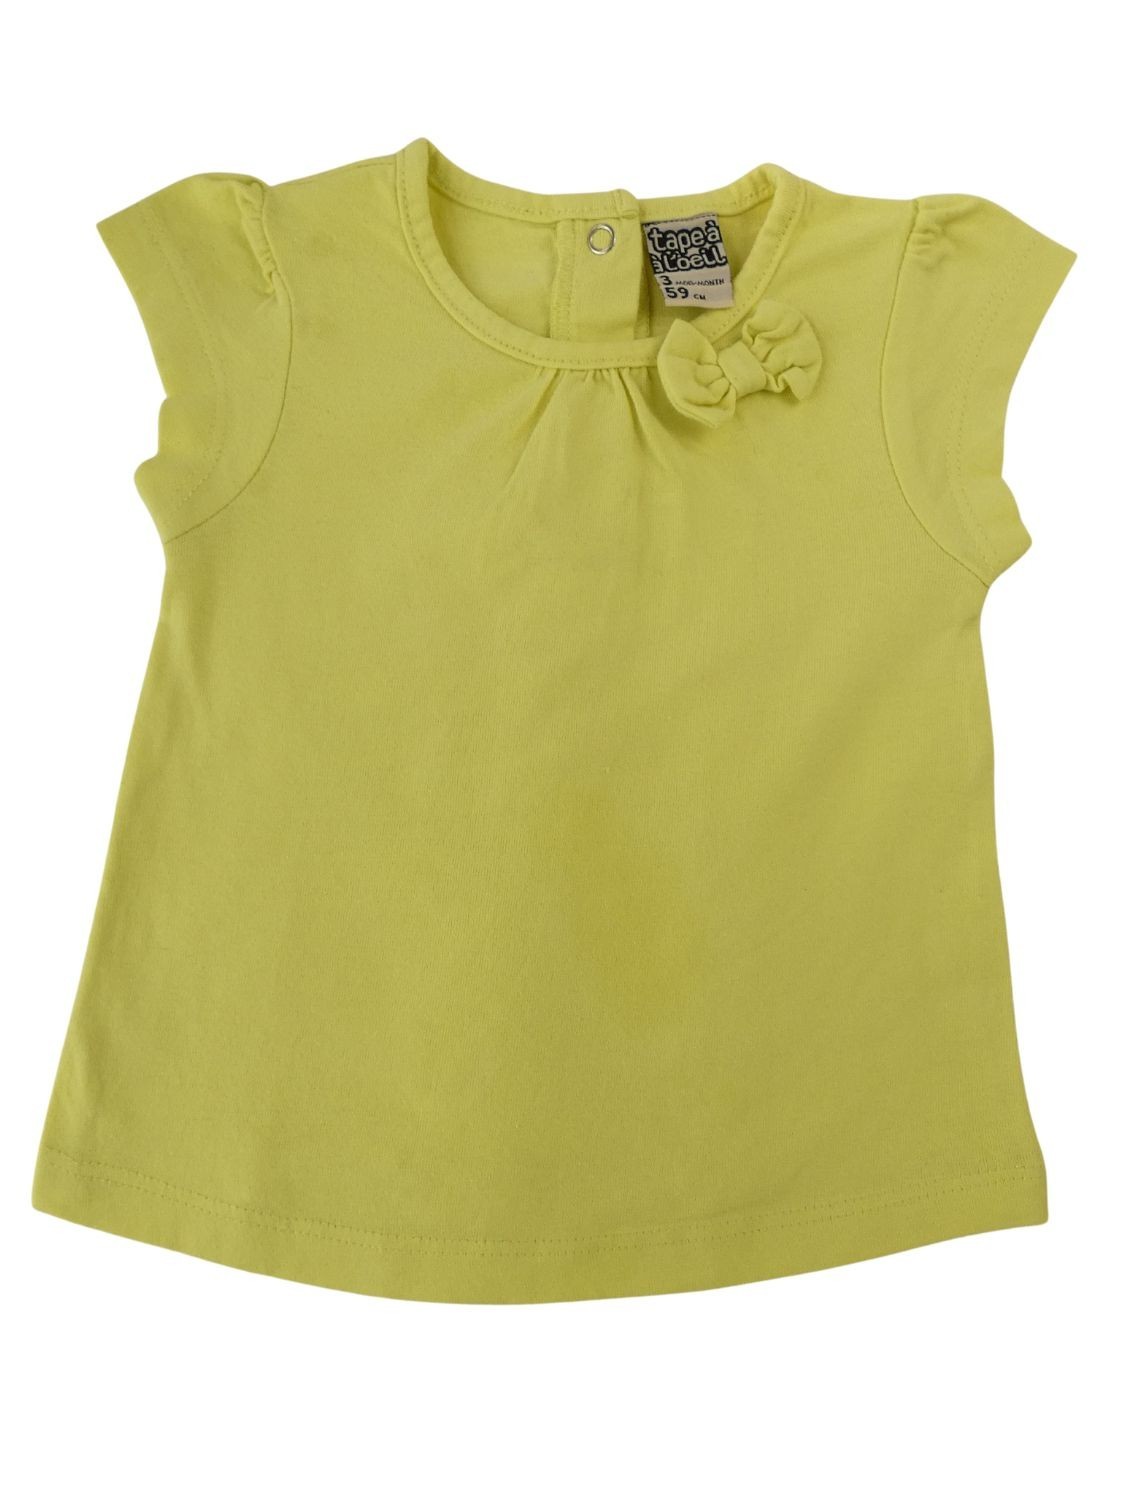 T-shirt MC jaune nœud taille 3 mois TAPE A L'OEIL